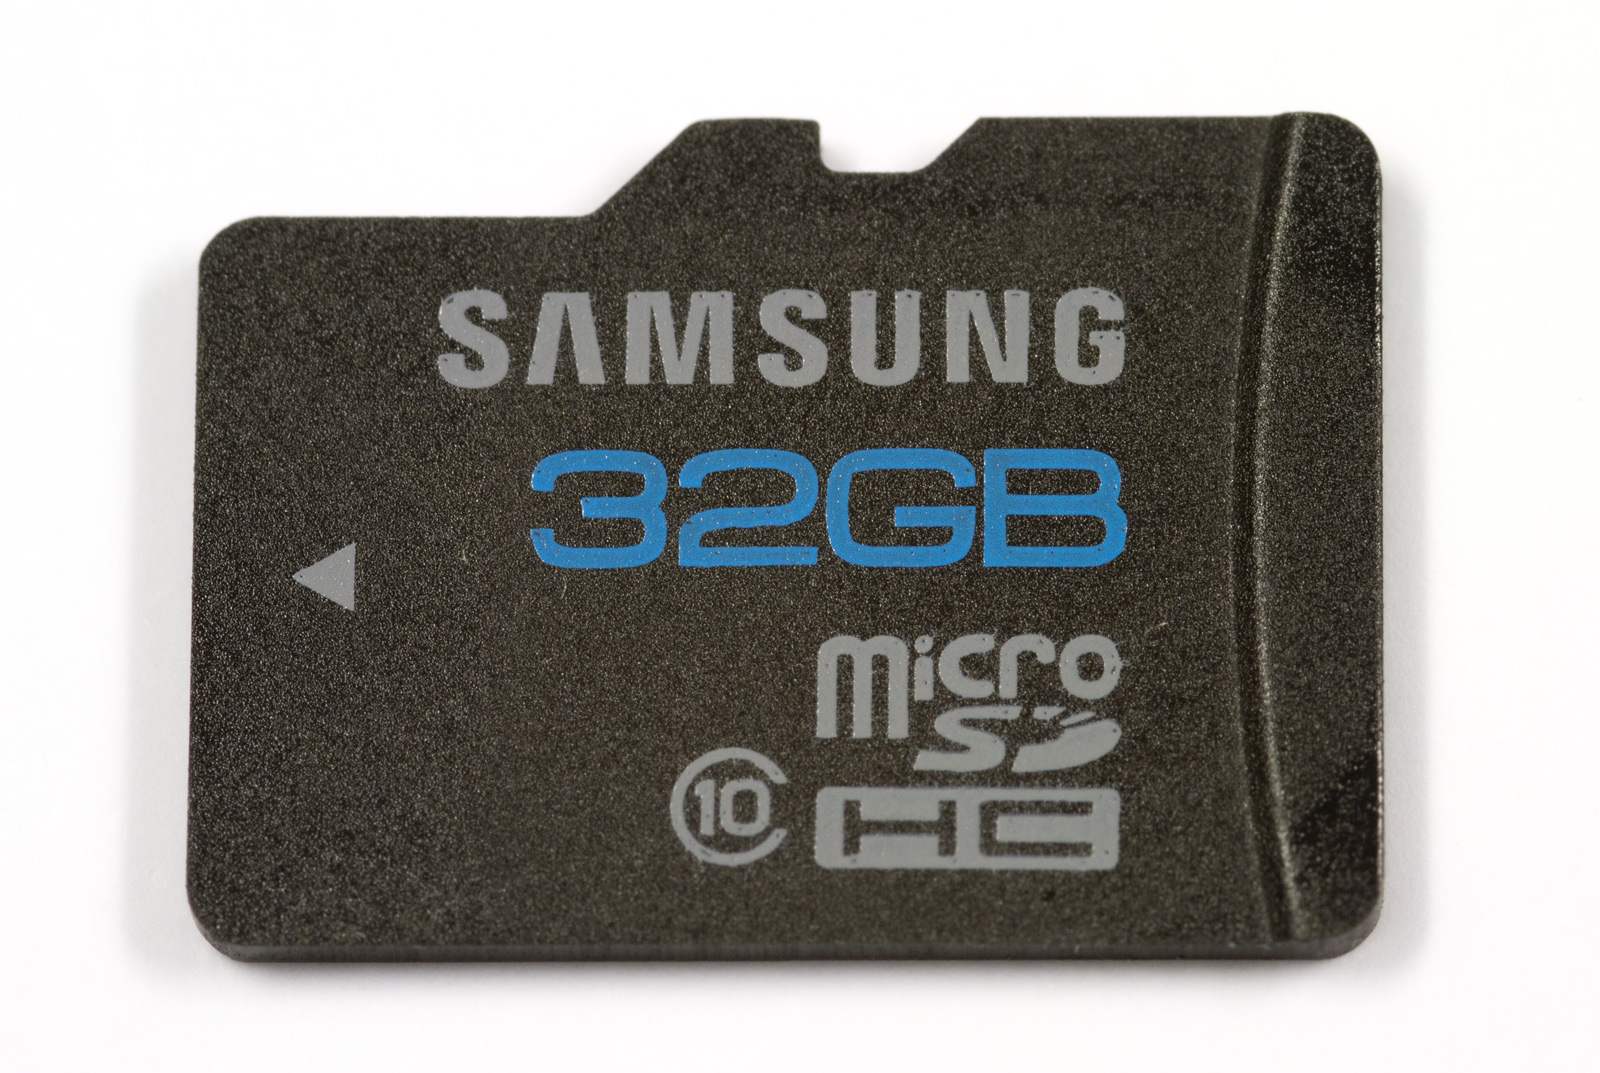 Какая микро сд лучше для видеорегистратора. MICROSD Samsung 32gb. Samsung MICROSDHC 32 ГБ. Микро SD 10 class 32 ГБ для видеорегистратора. Samsung MICROSD 10 class.